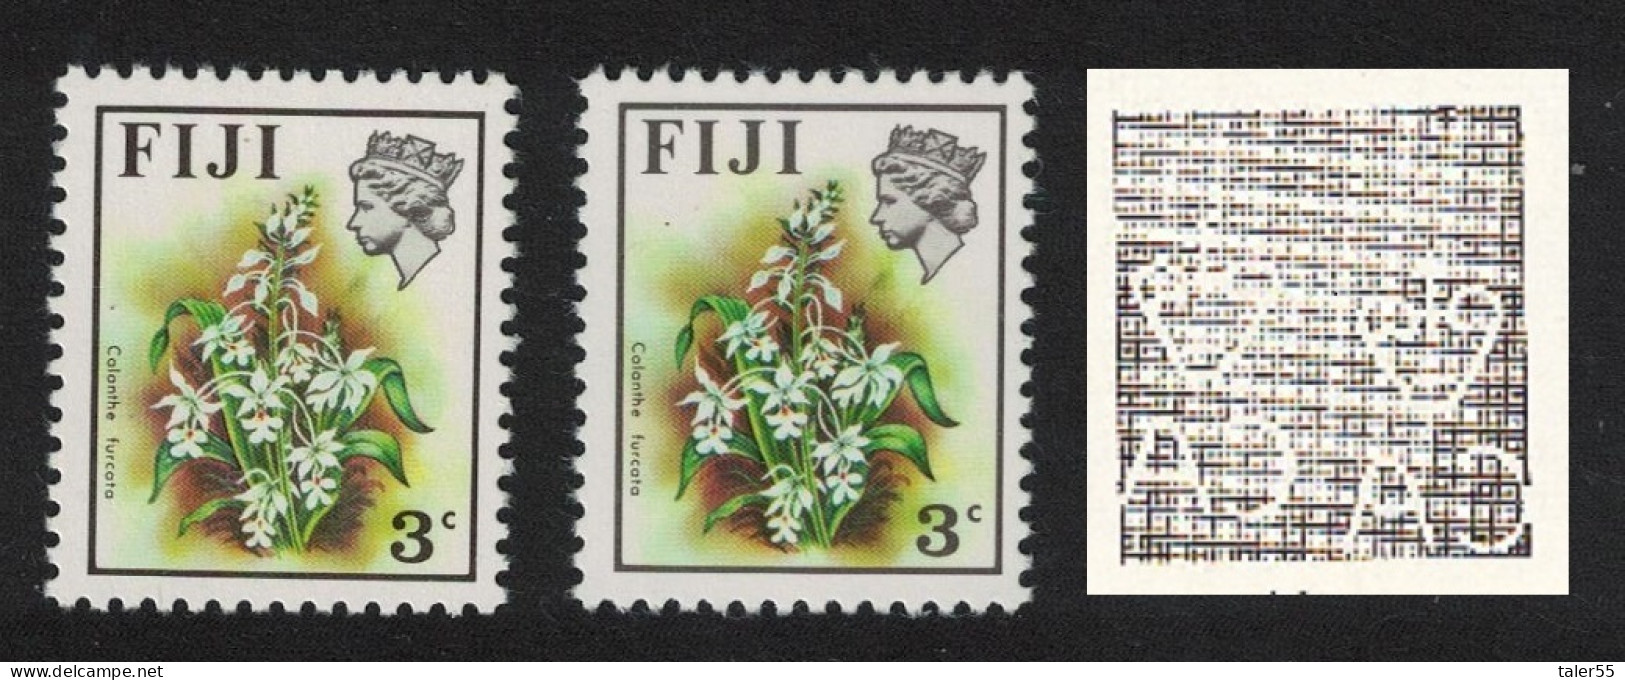 Fiji Orchid' Calanthe Furcata' VARIETY RARR 1975 MNH SG#517var - Fidji (1970-...)